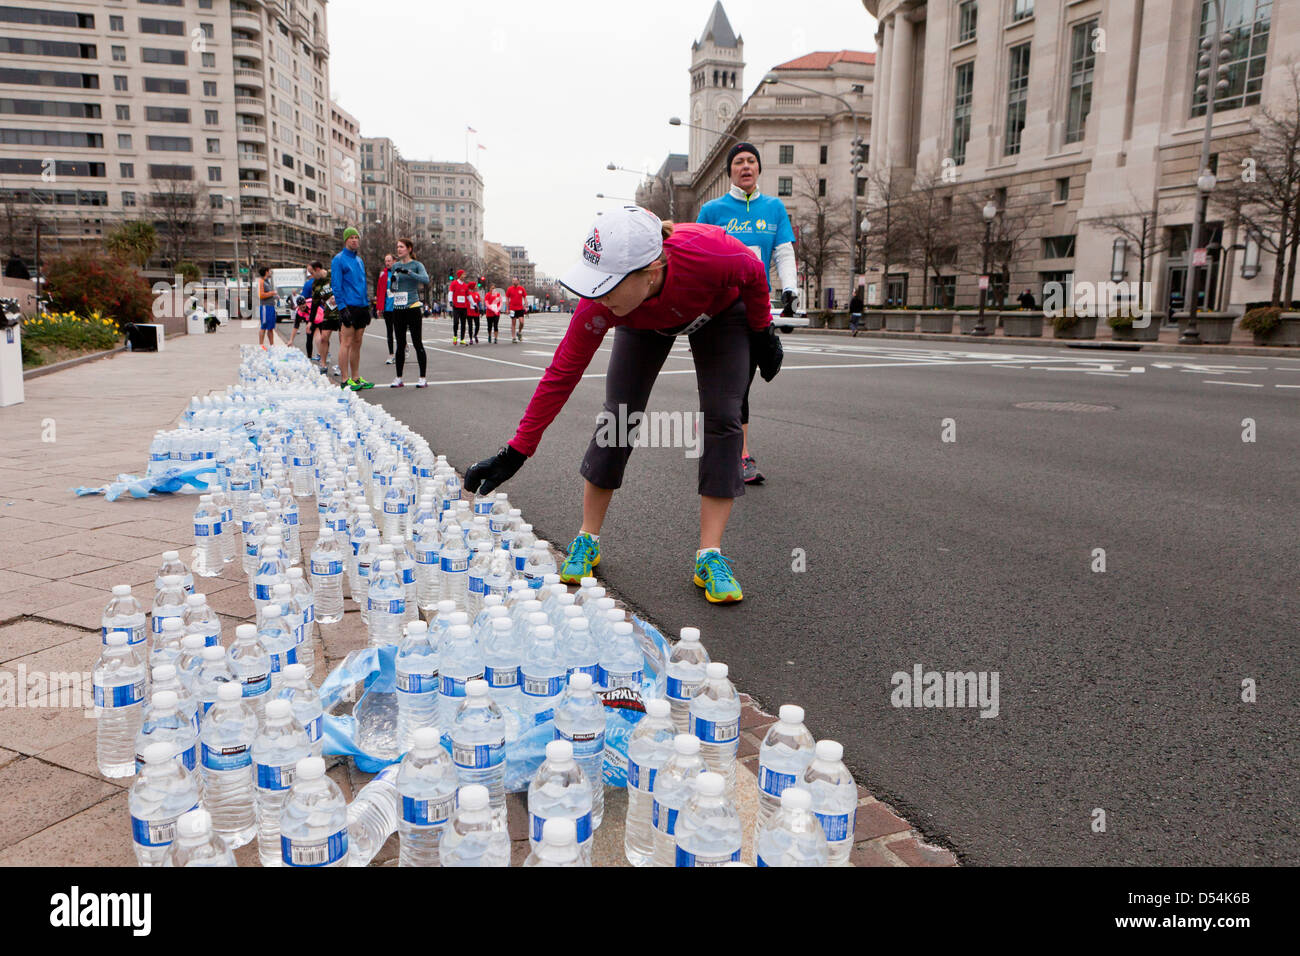 Läufer, die Abholung in Flaschen abgefülltes Wasser nach dem Rennen Stockfoto